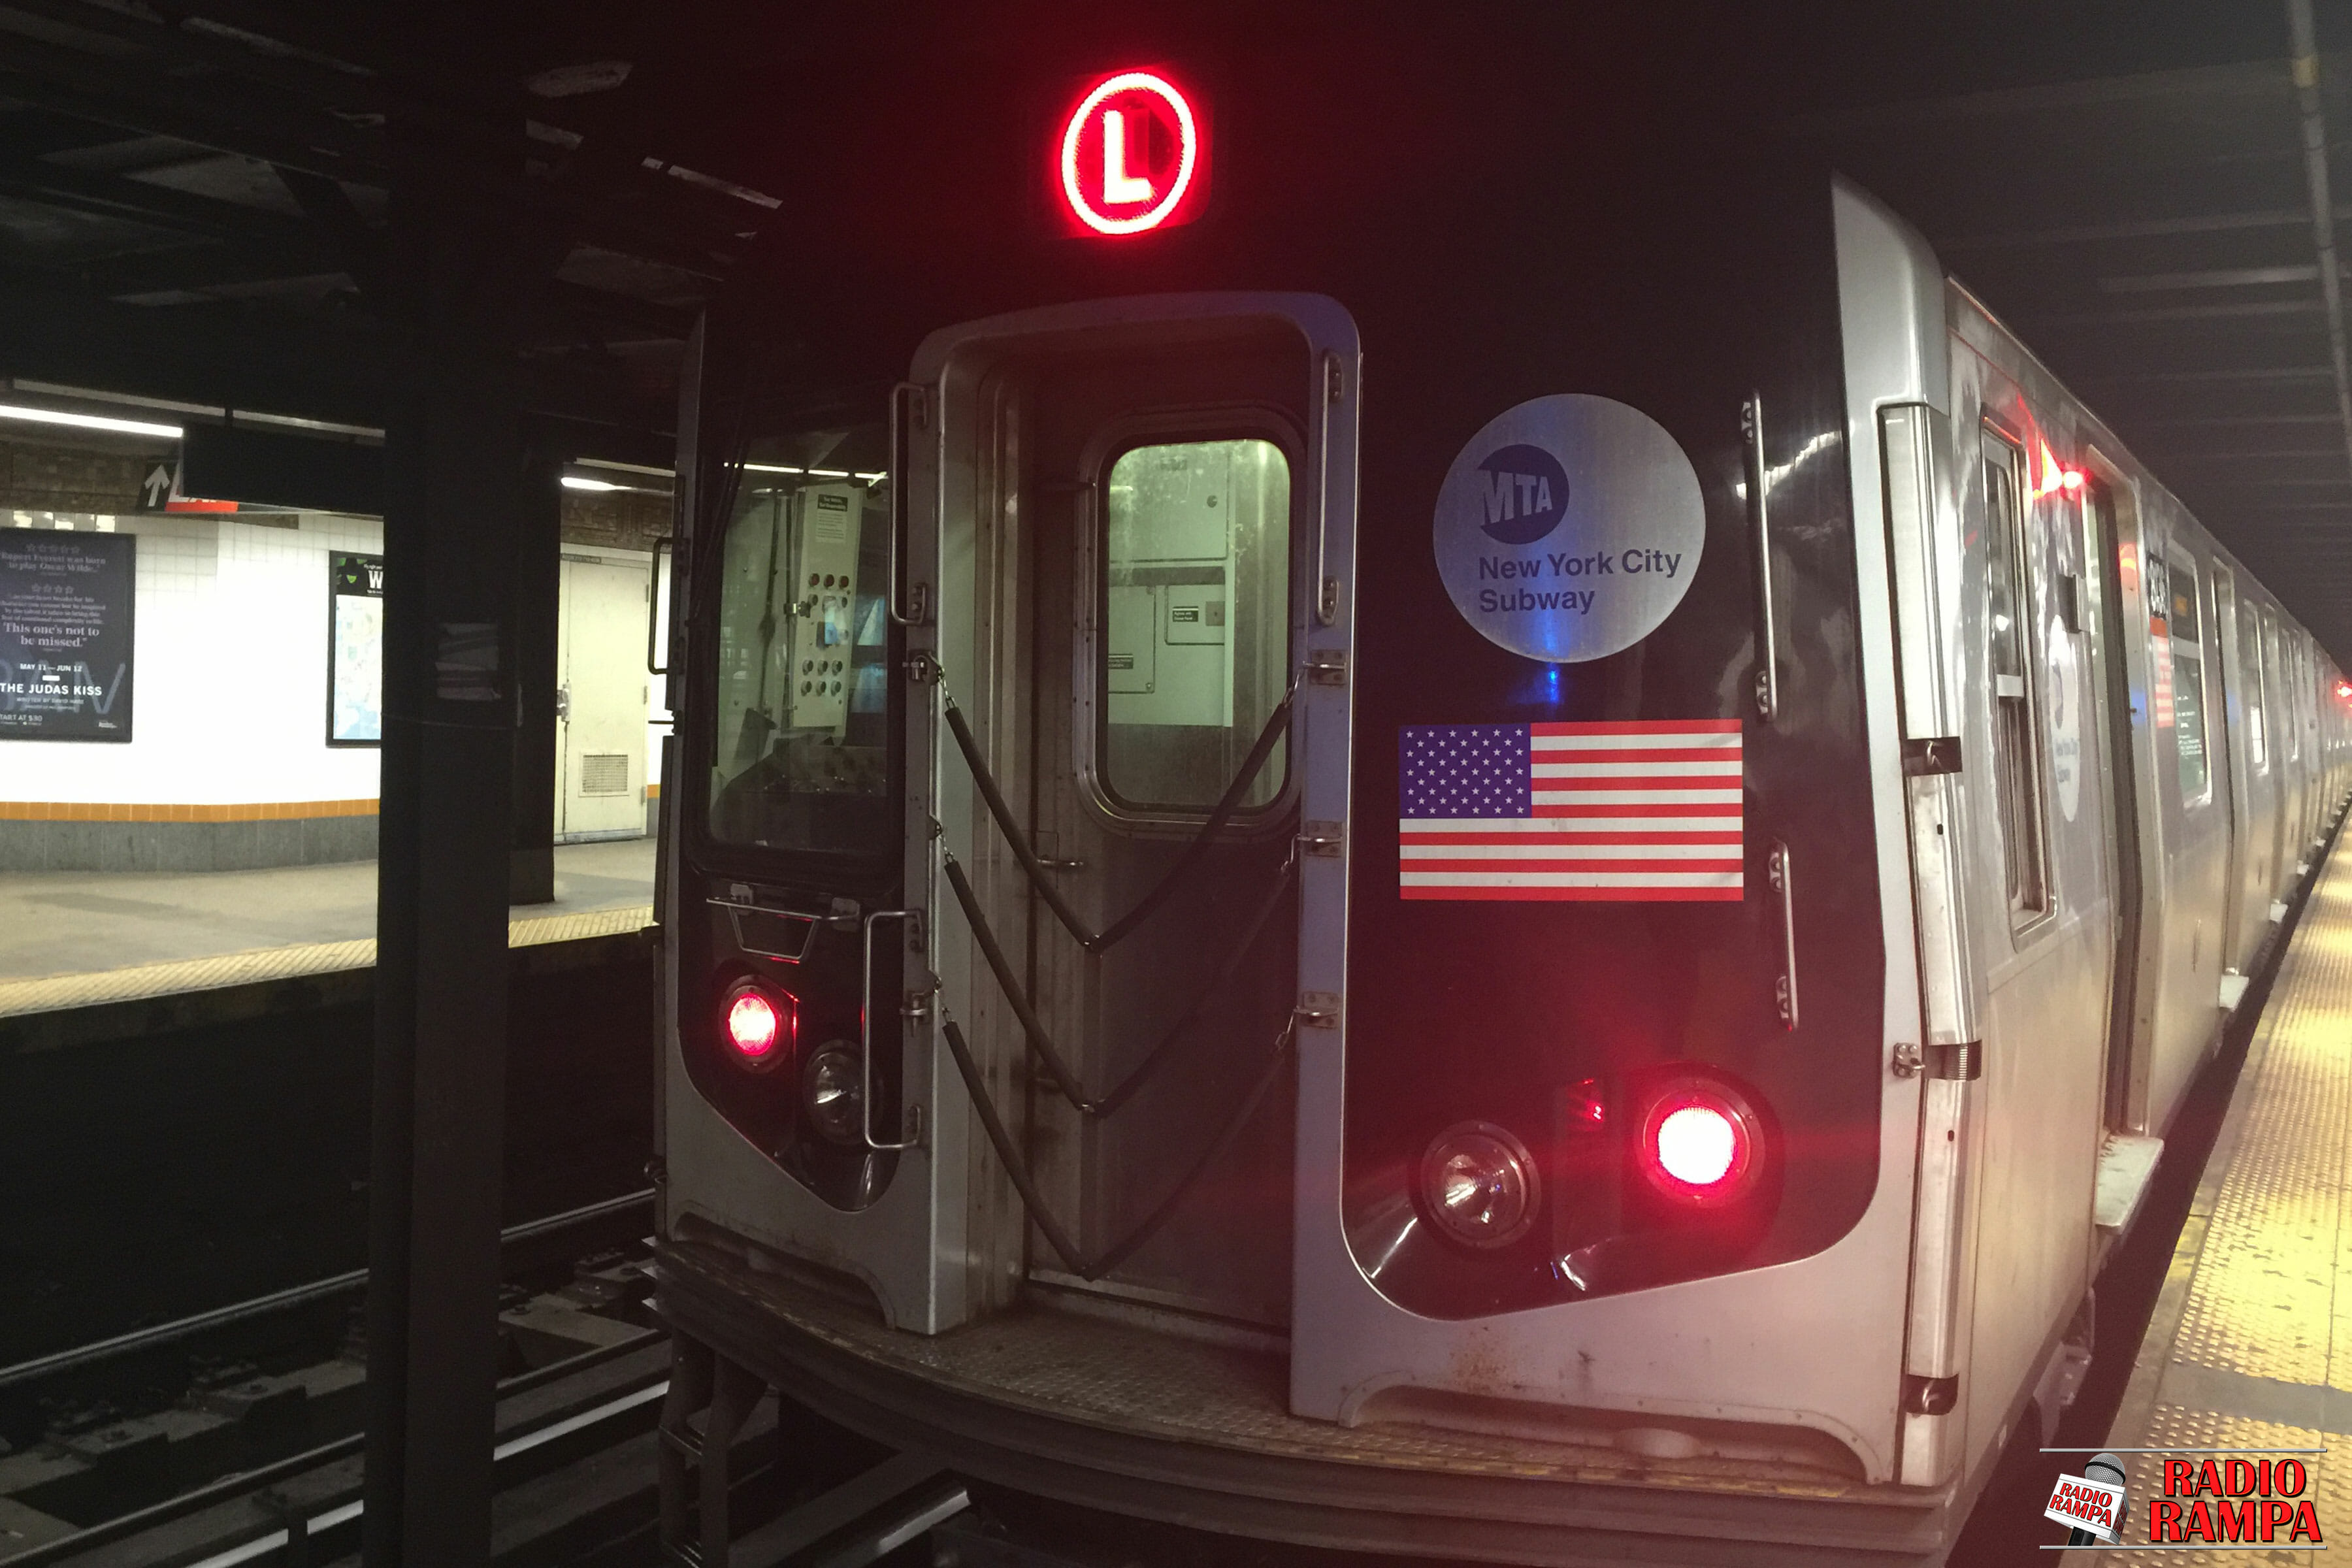 Nowojorskie metro będzie zamknięte codziennie od 1 a.m. do 5 a.m. na sprzątanie